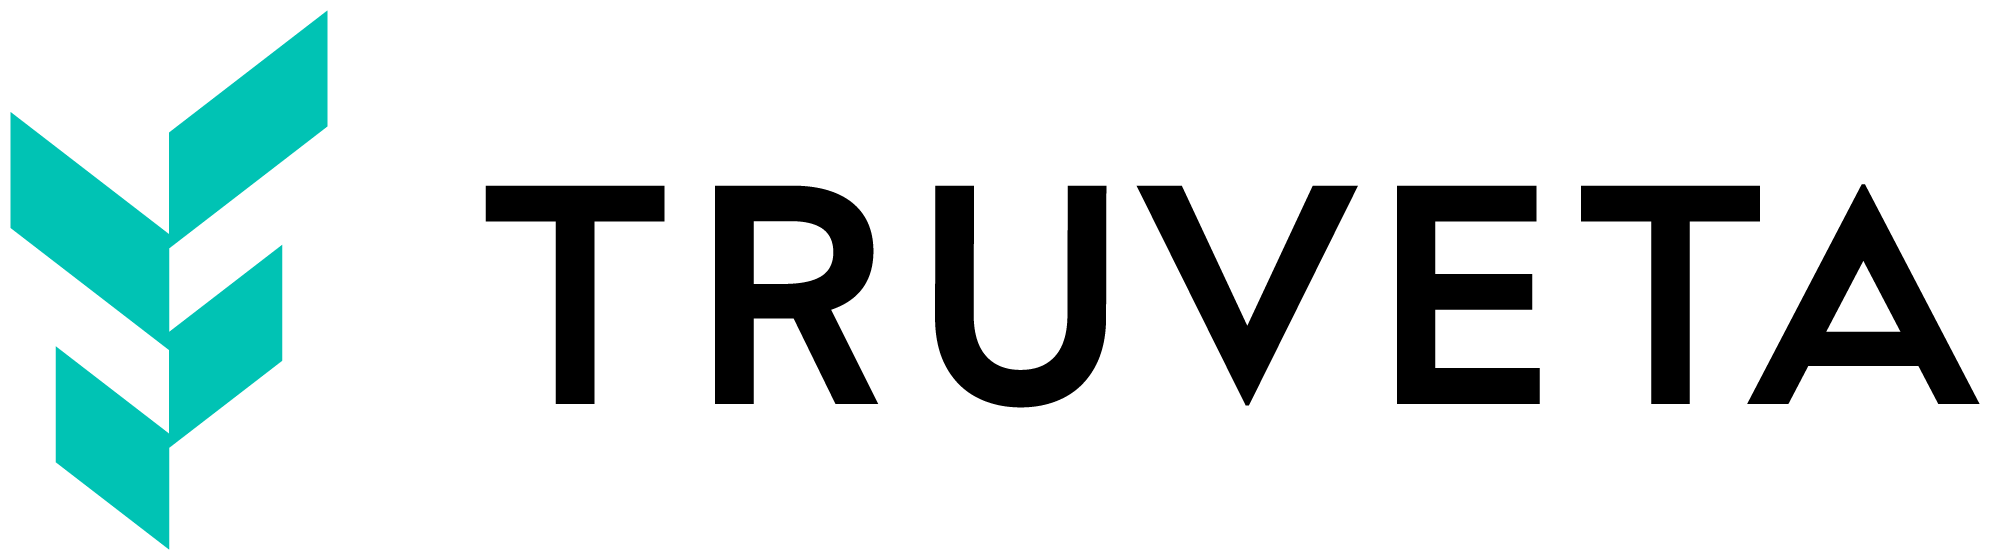 Sponsor Logo - Truveta